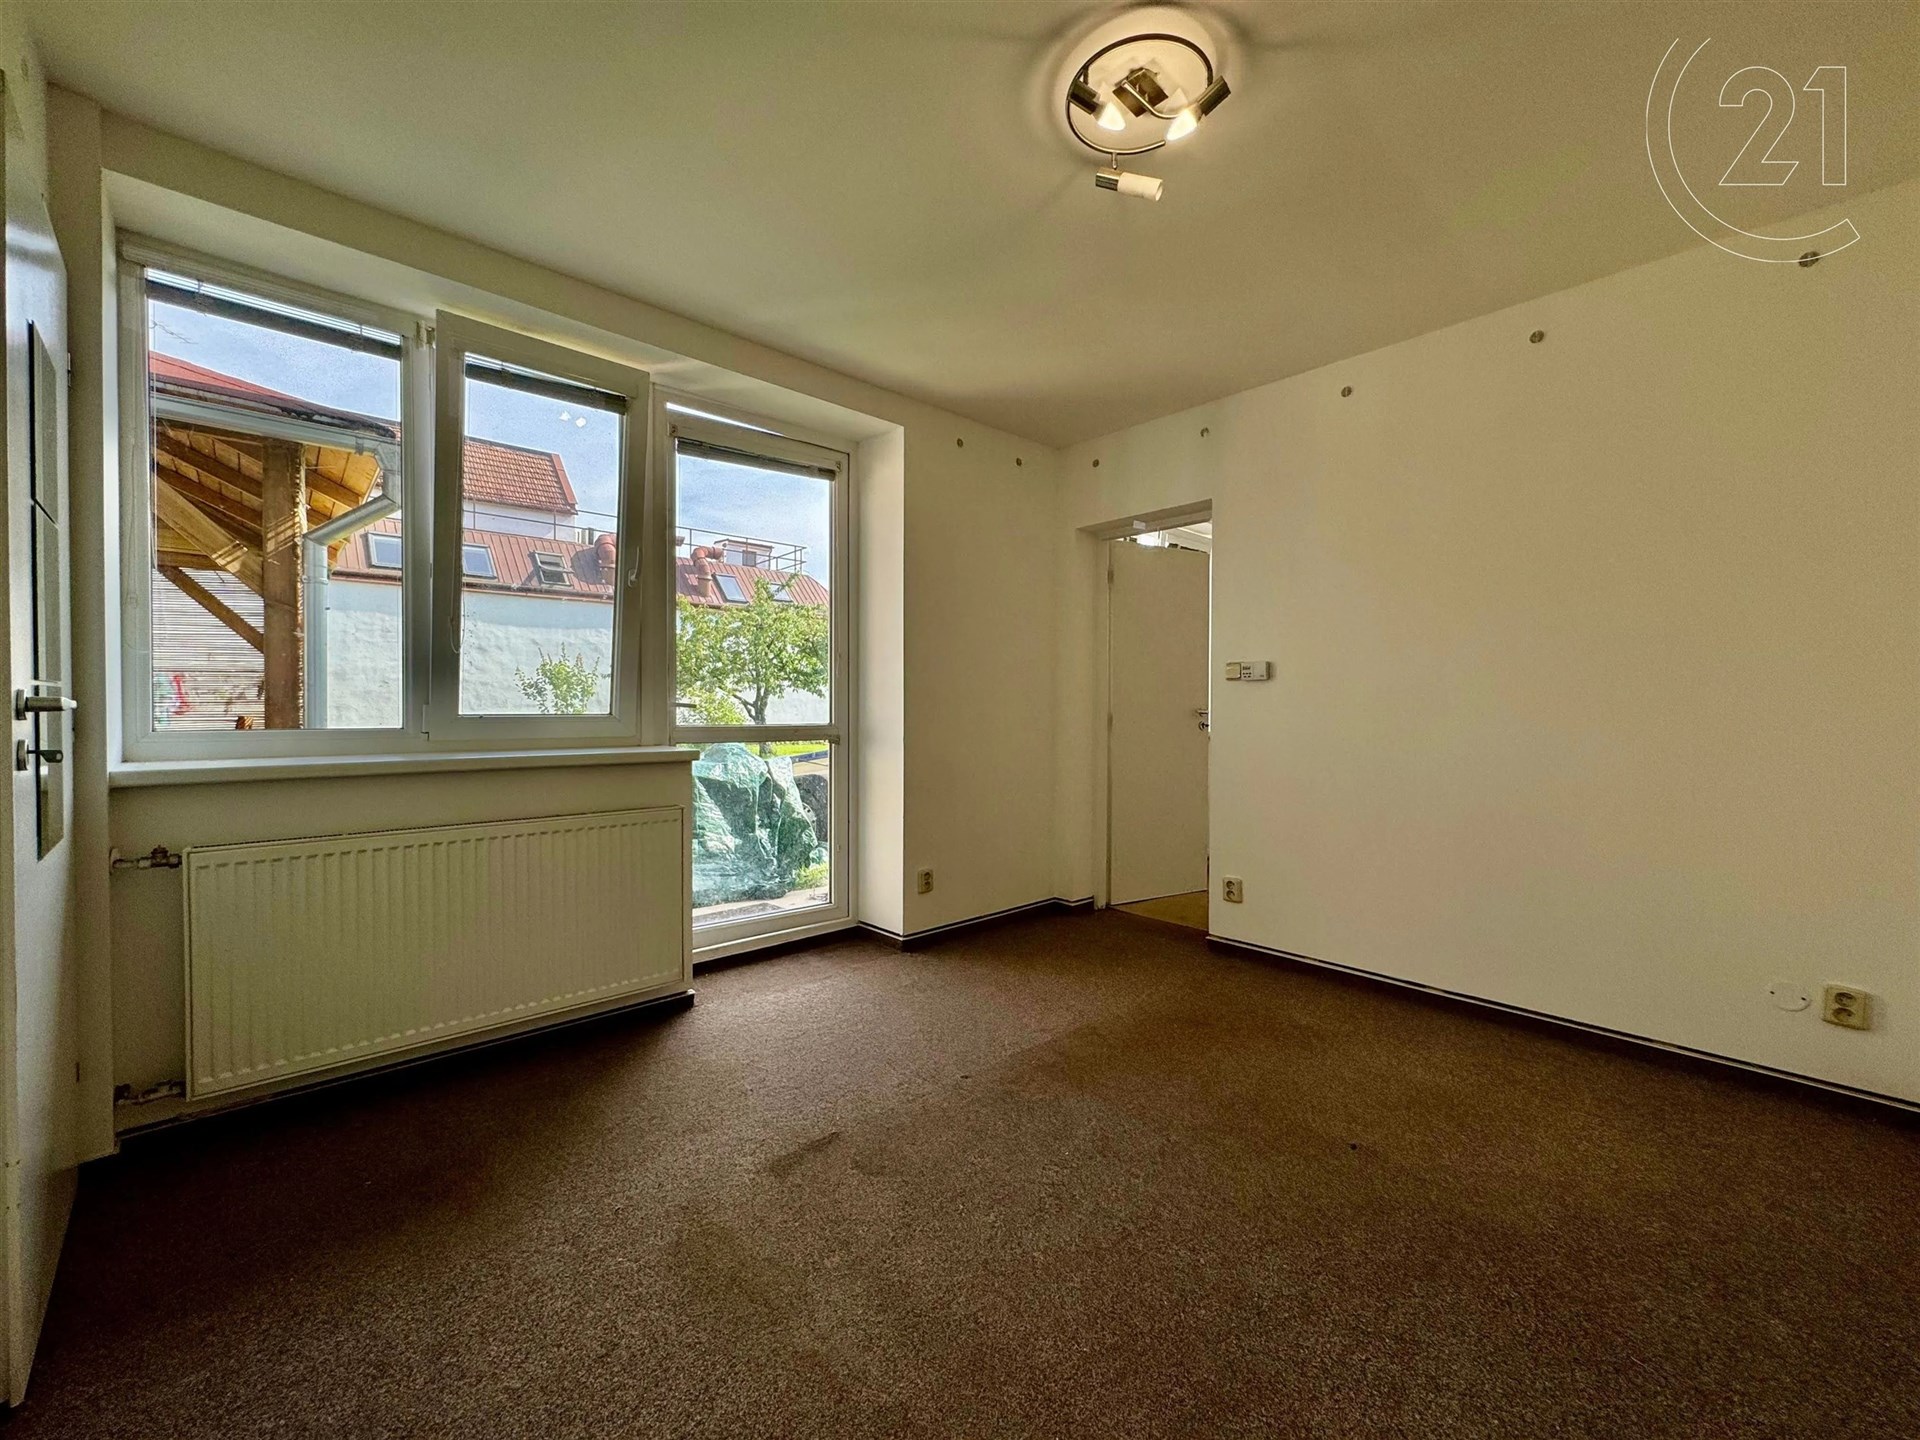 prázdná místnost s přirozené světlo, koberec, a radiátor